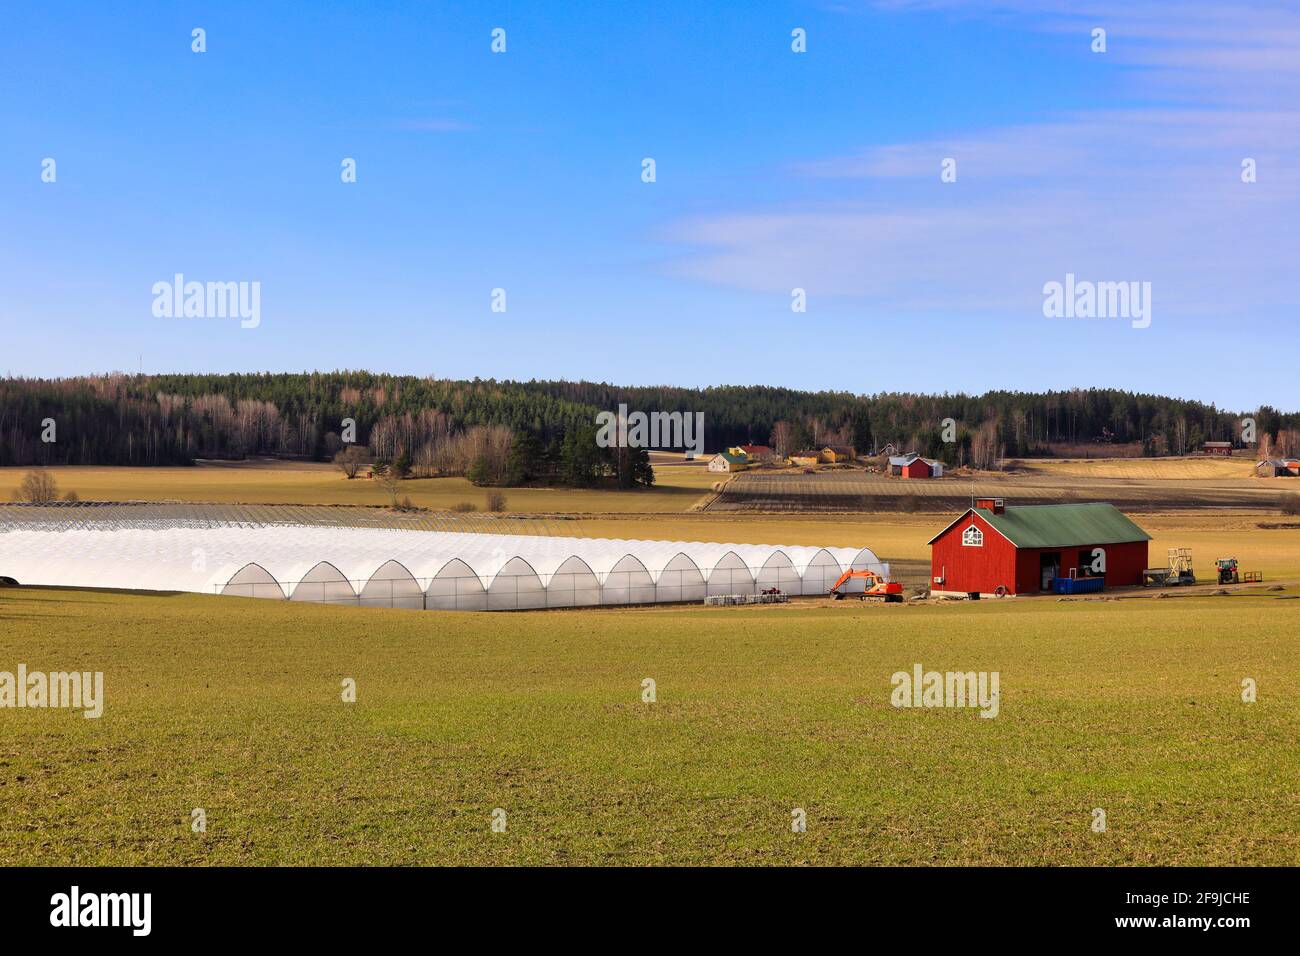 Paysage agricole de serres, champ et bâtiment de soutien rouge avec des machines sous ciel bleu avec quelques nuages. Sauvo, Finlande. 4 avril 2021 Banque D'Images